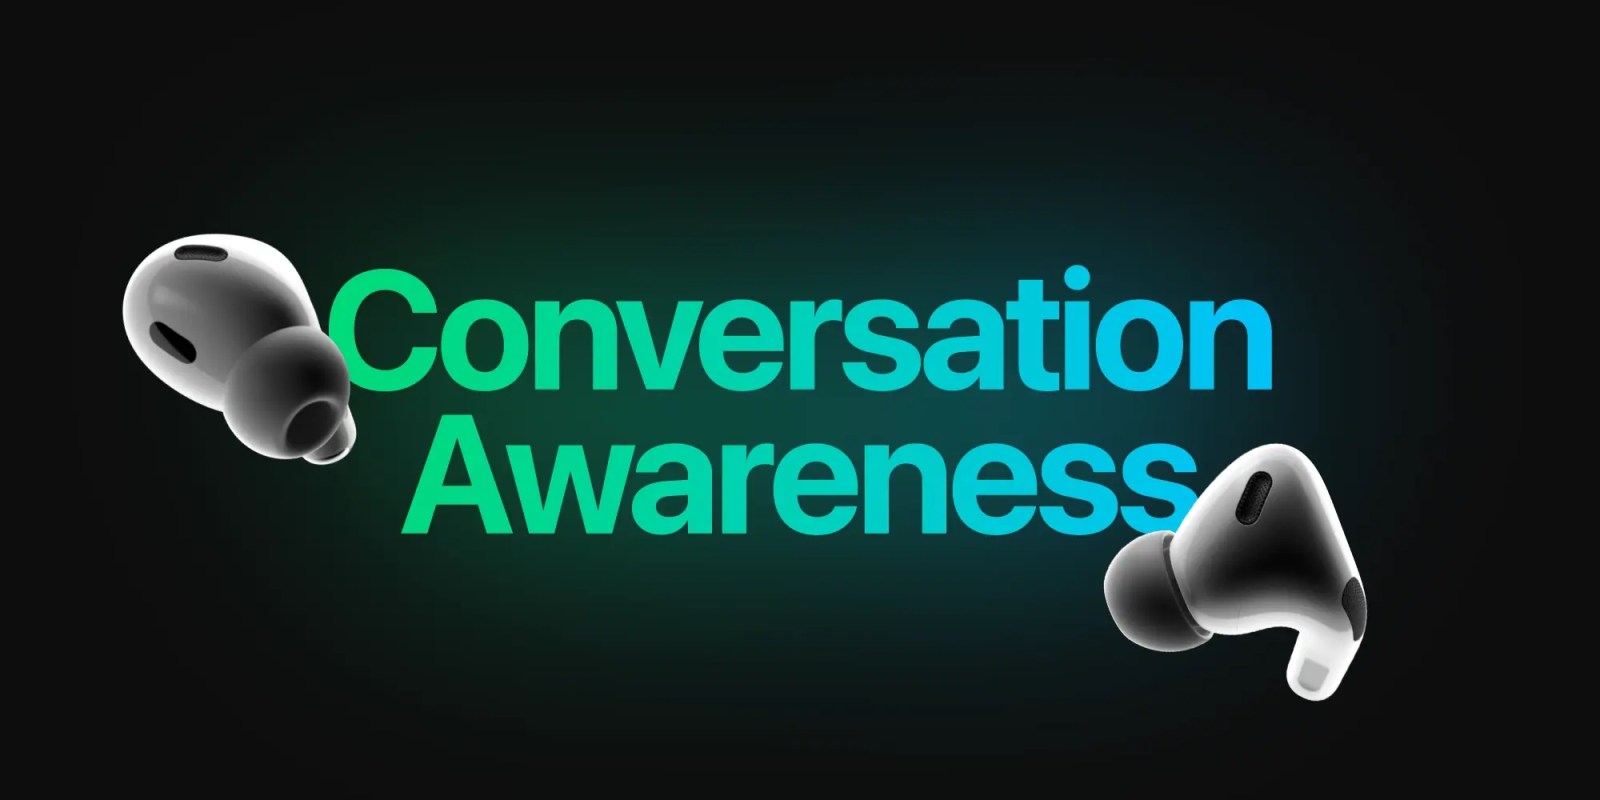 Conversation Awareness AirPods Pro را خاموش کنید